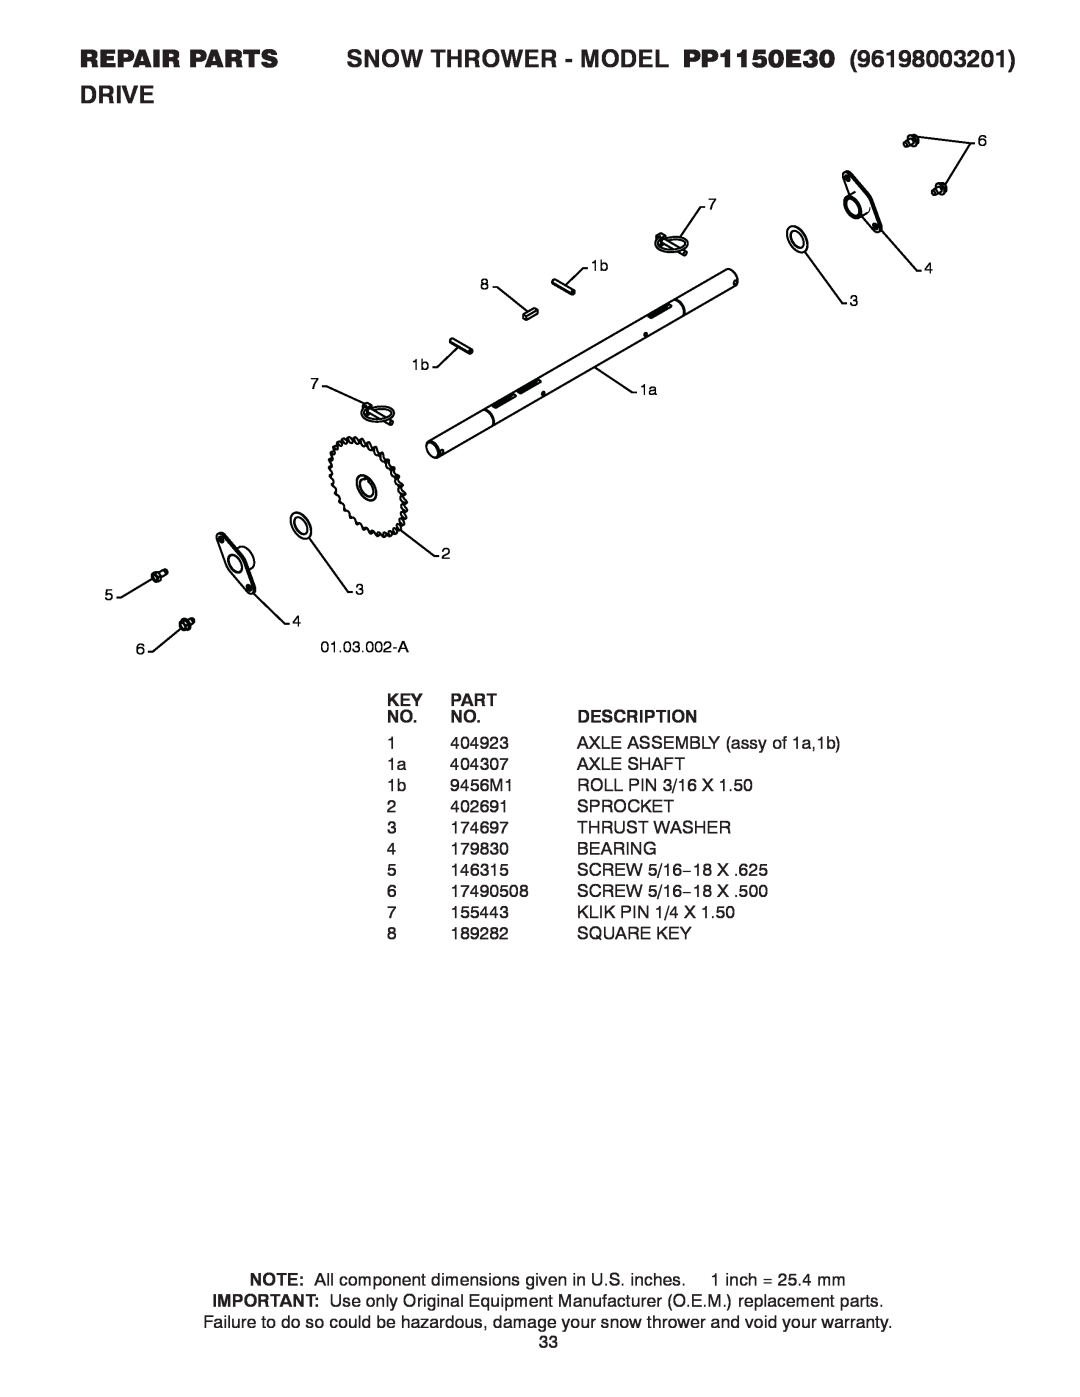 Poulan owner manual Repair Parts, SNOW THROWER - MODEL PP1150E30, Drive, Description 